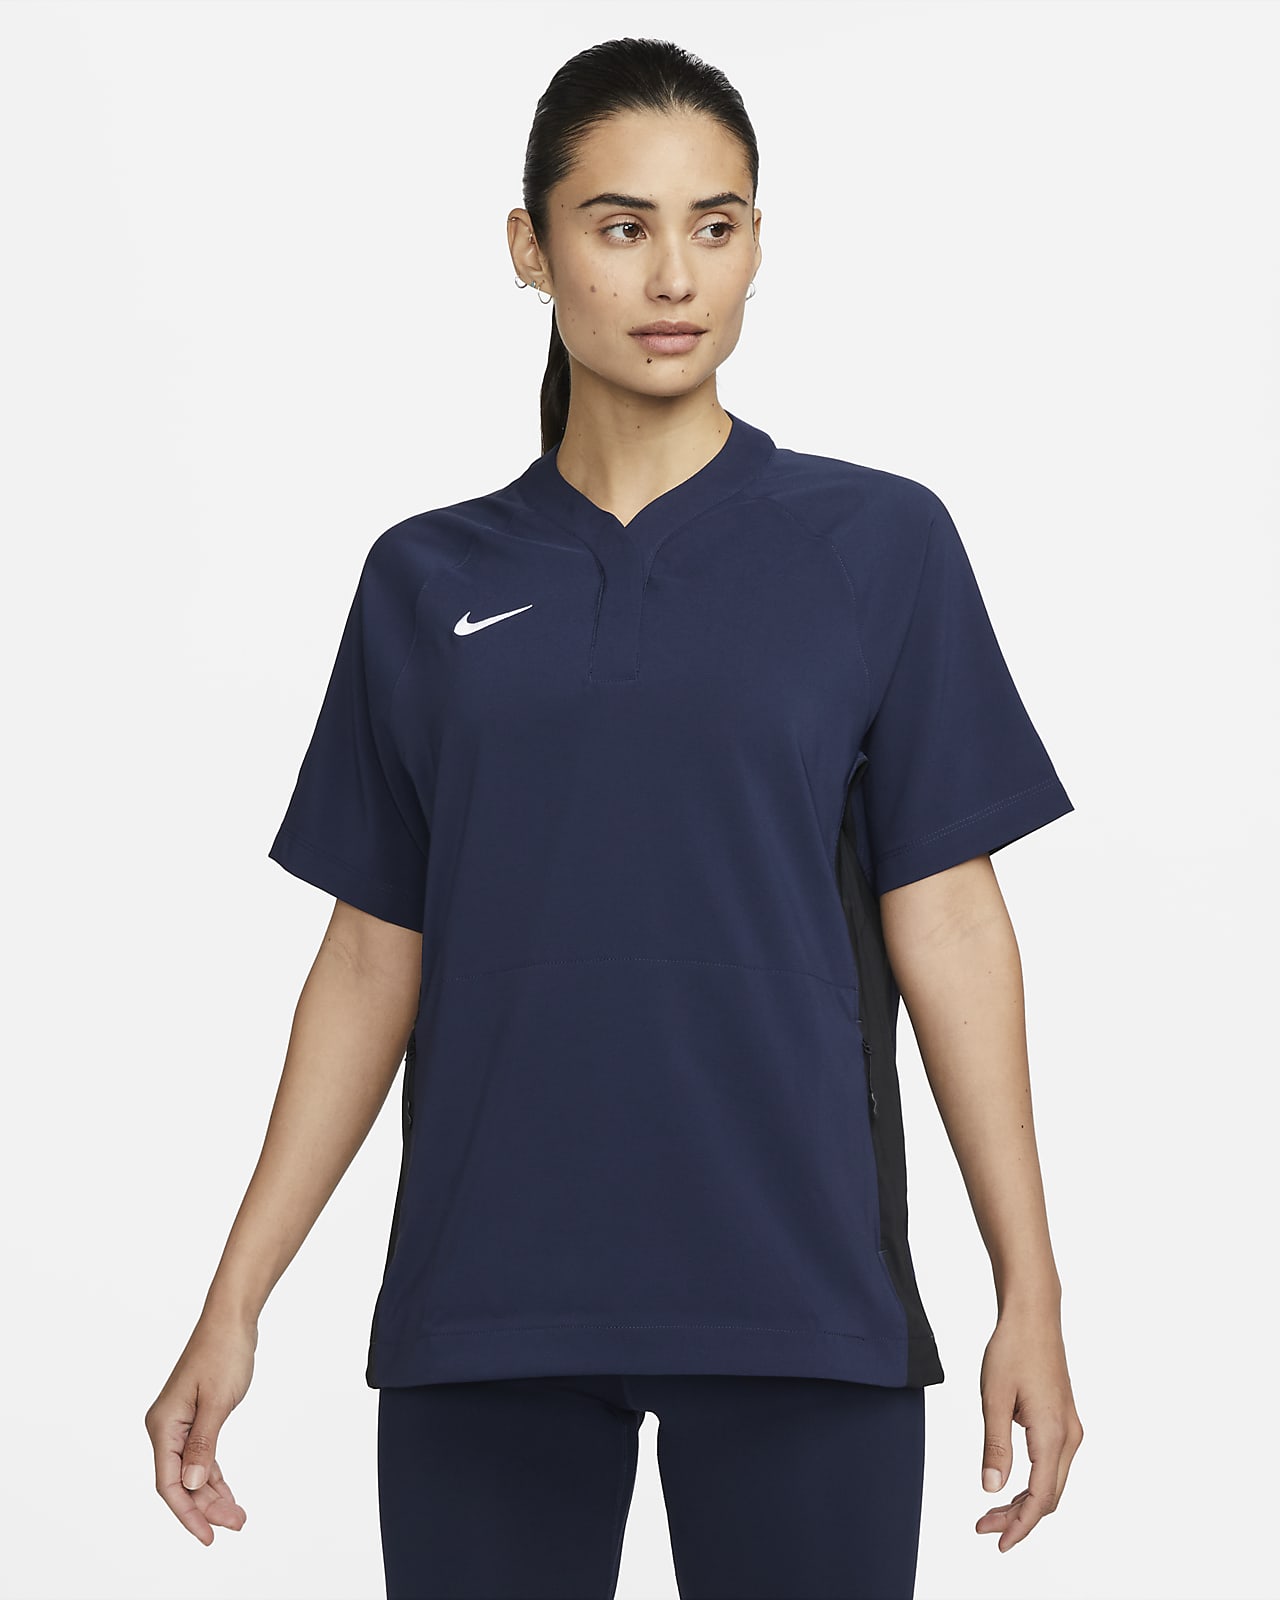 Nike Women's Short-Sleeve Softball Windshirt